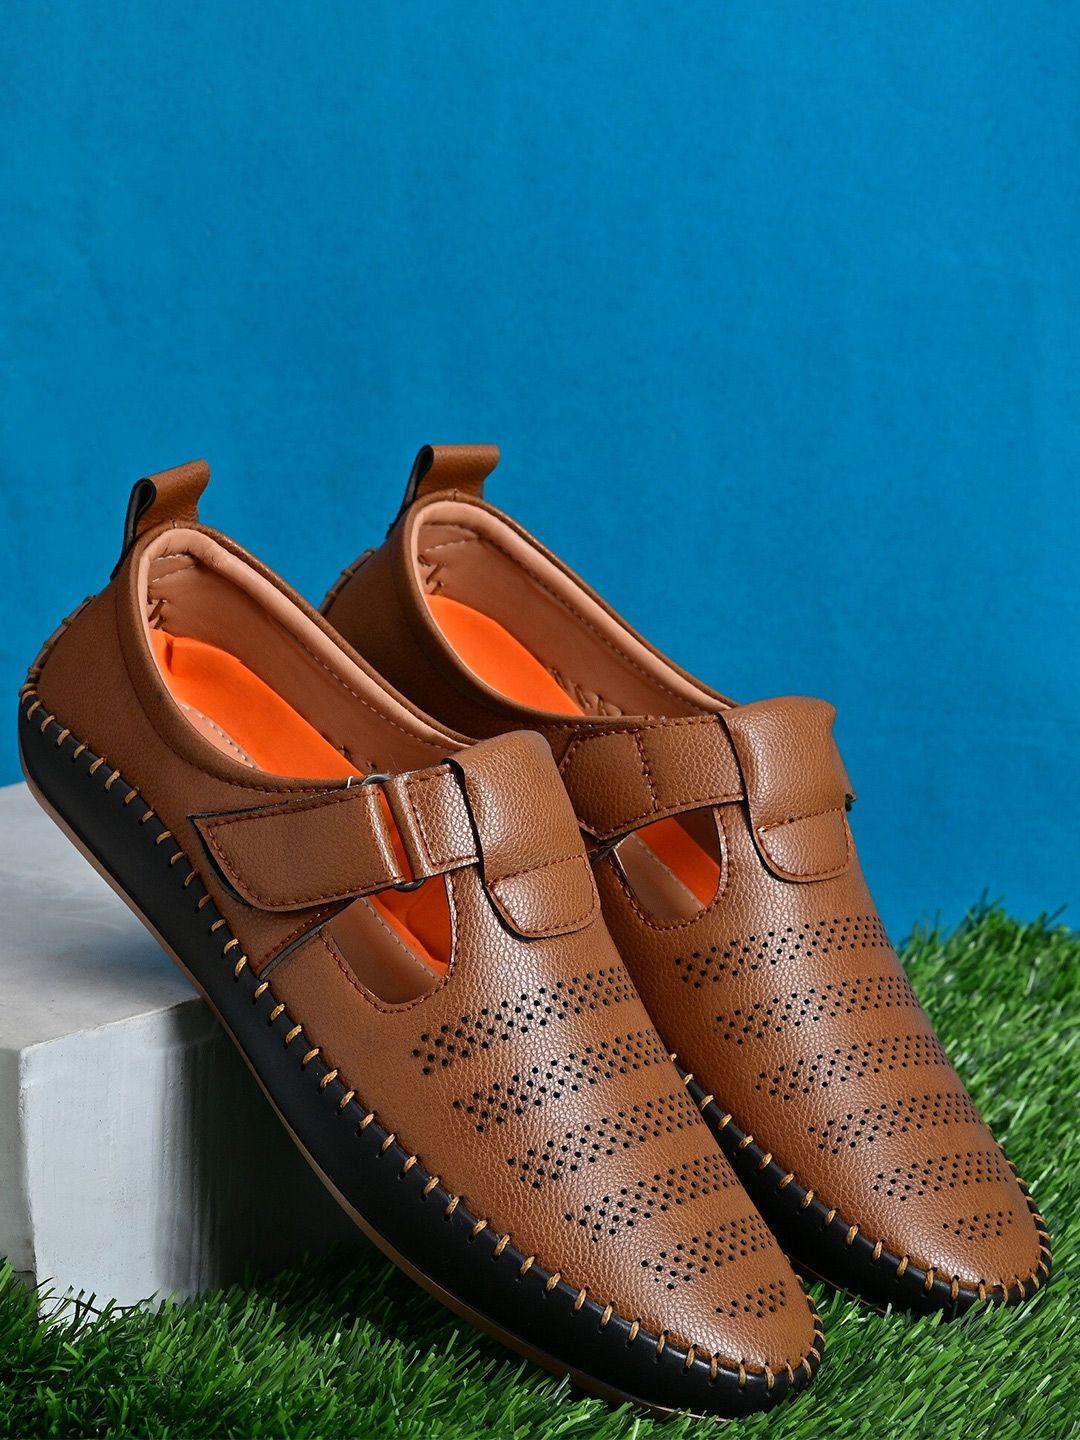 invictus men tan faux leather shoe-style sandals